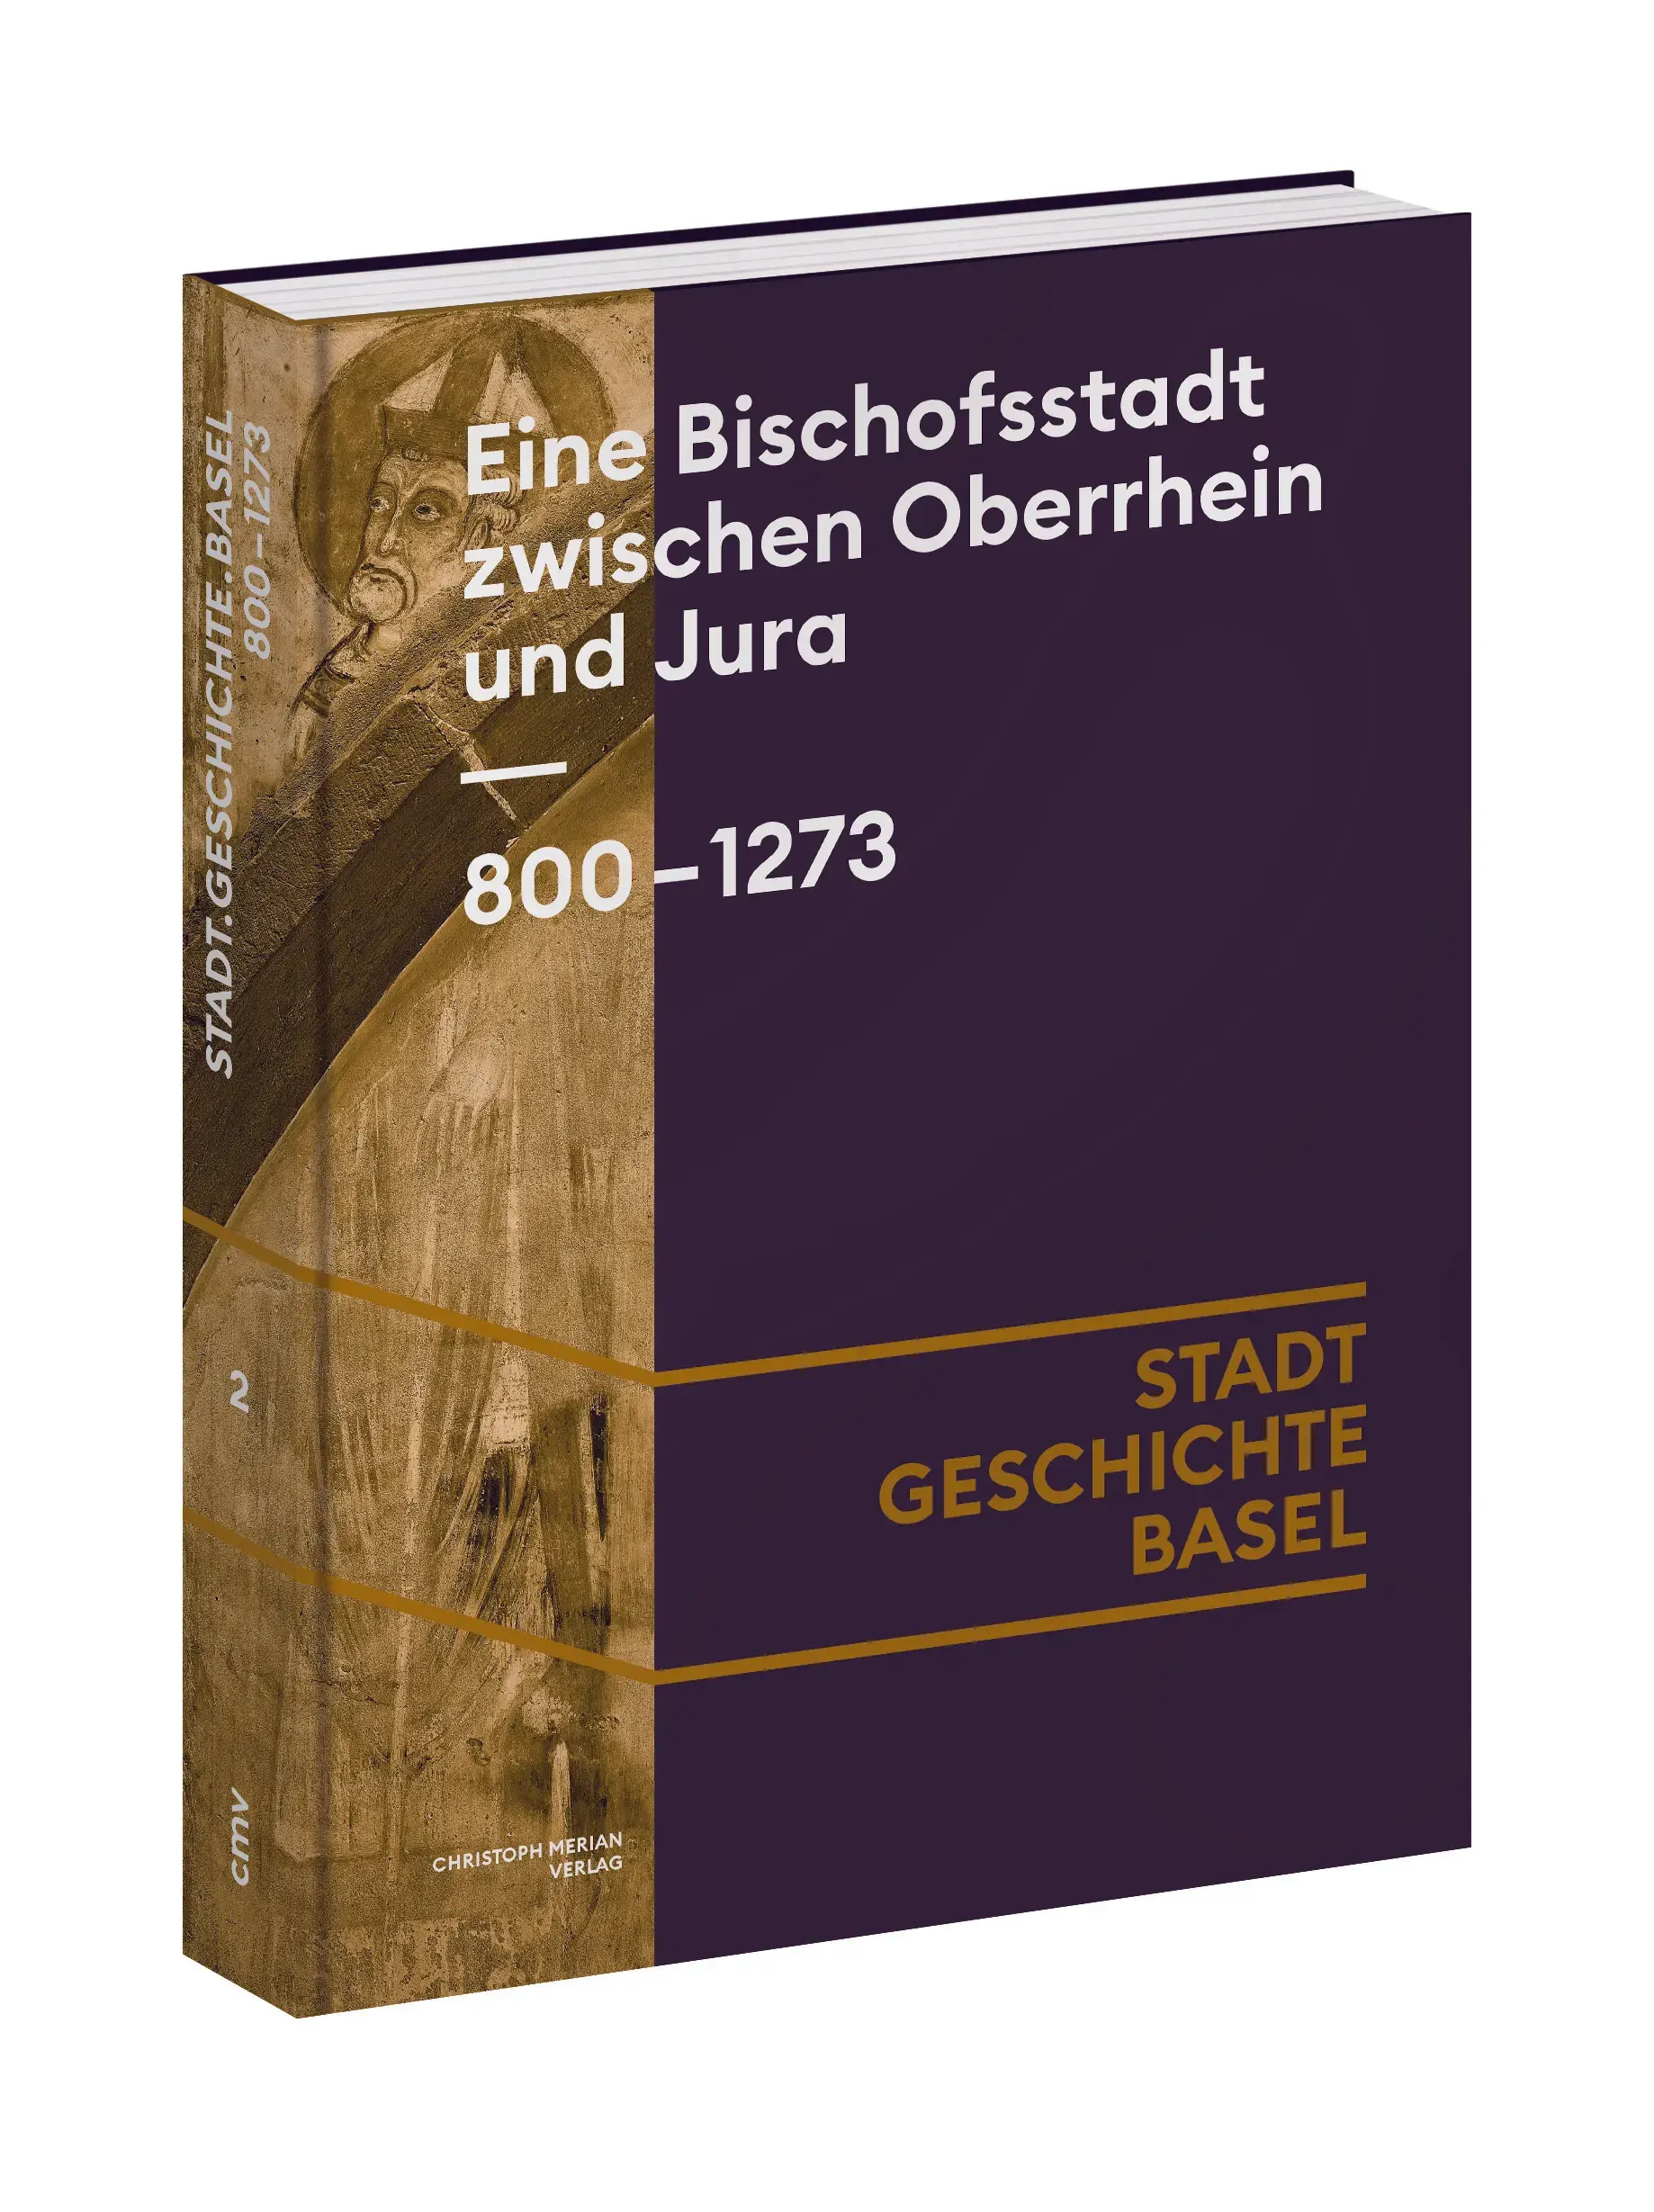 Das Cover von Band 2 mit dem Titel "Eine Bischofsstadt zwischen Oberrhein und Jura - 800 bis 1273.